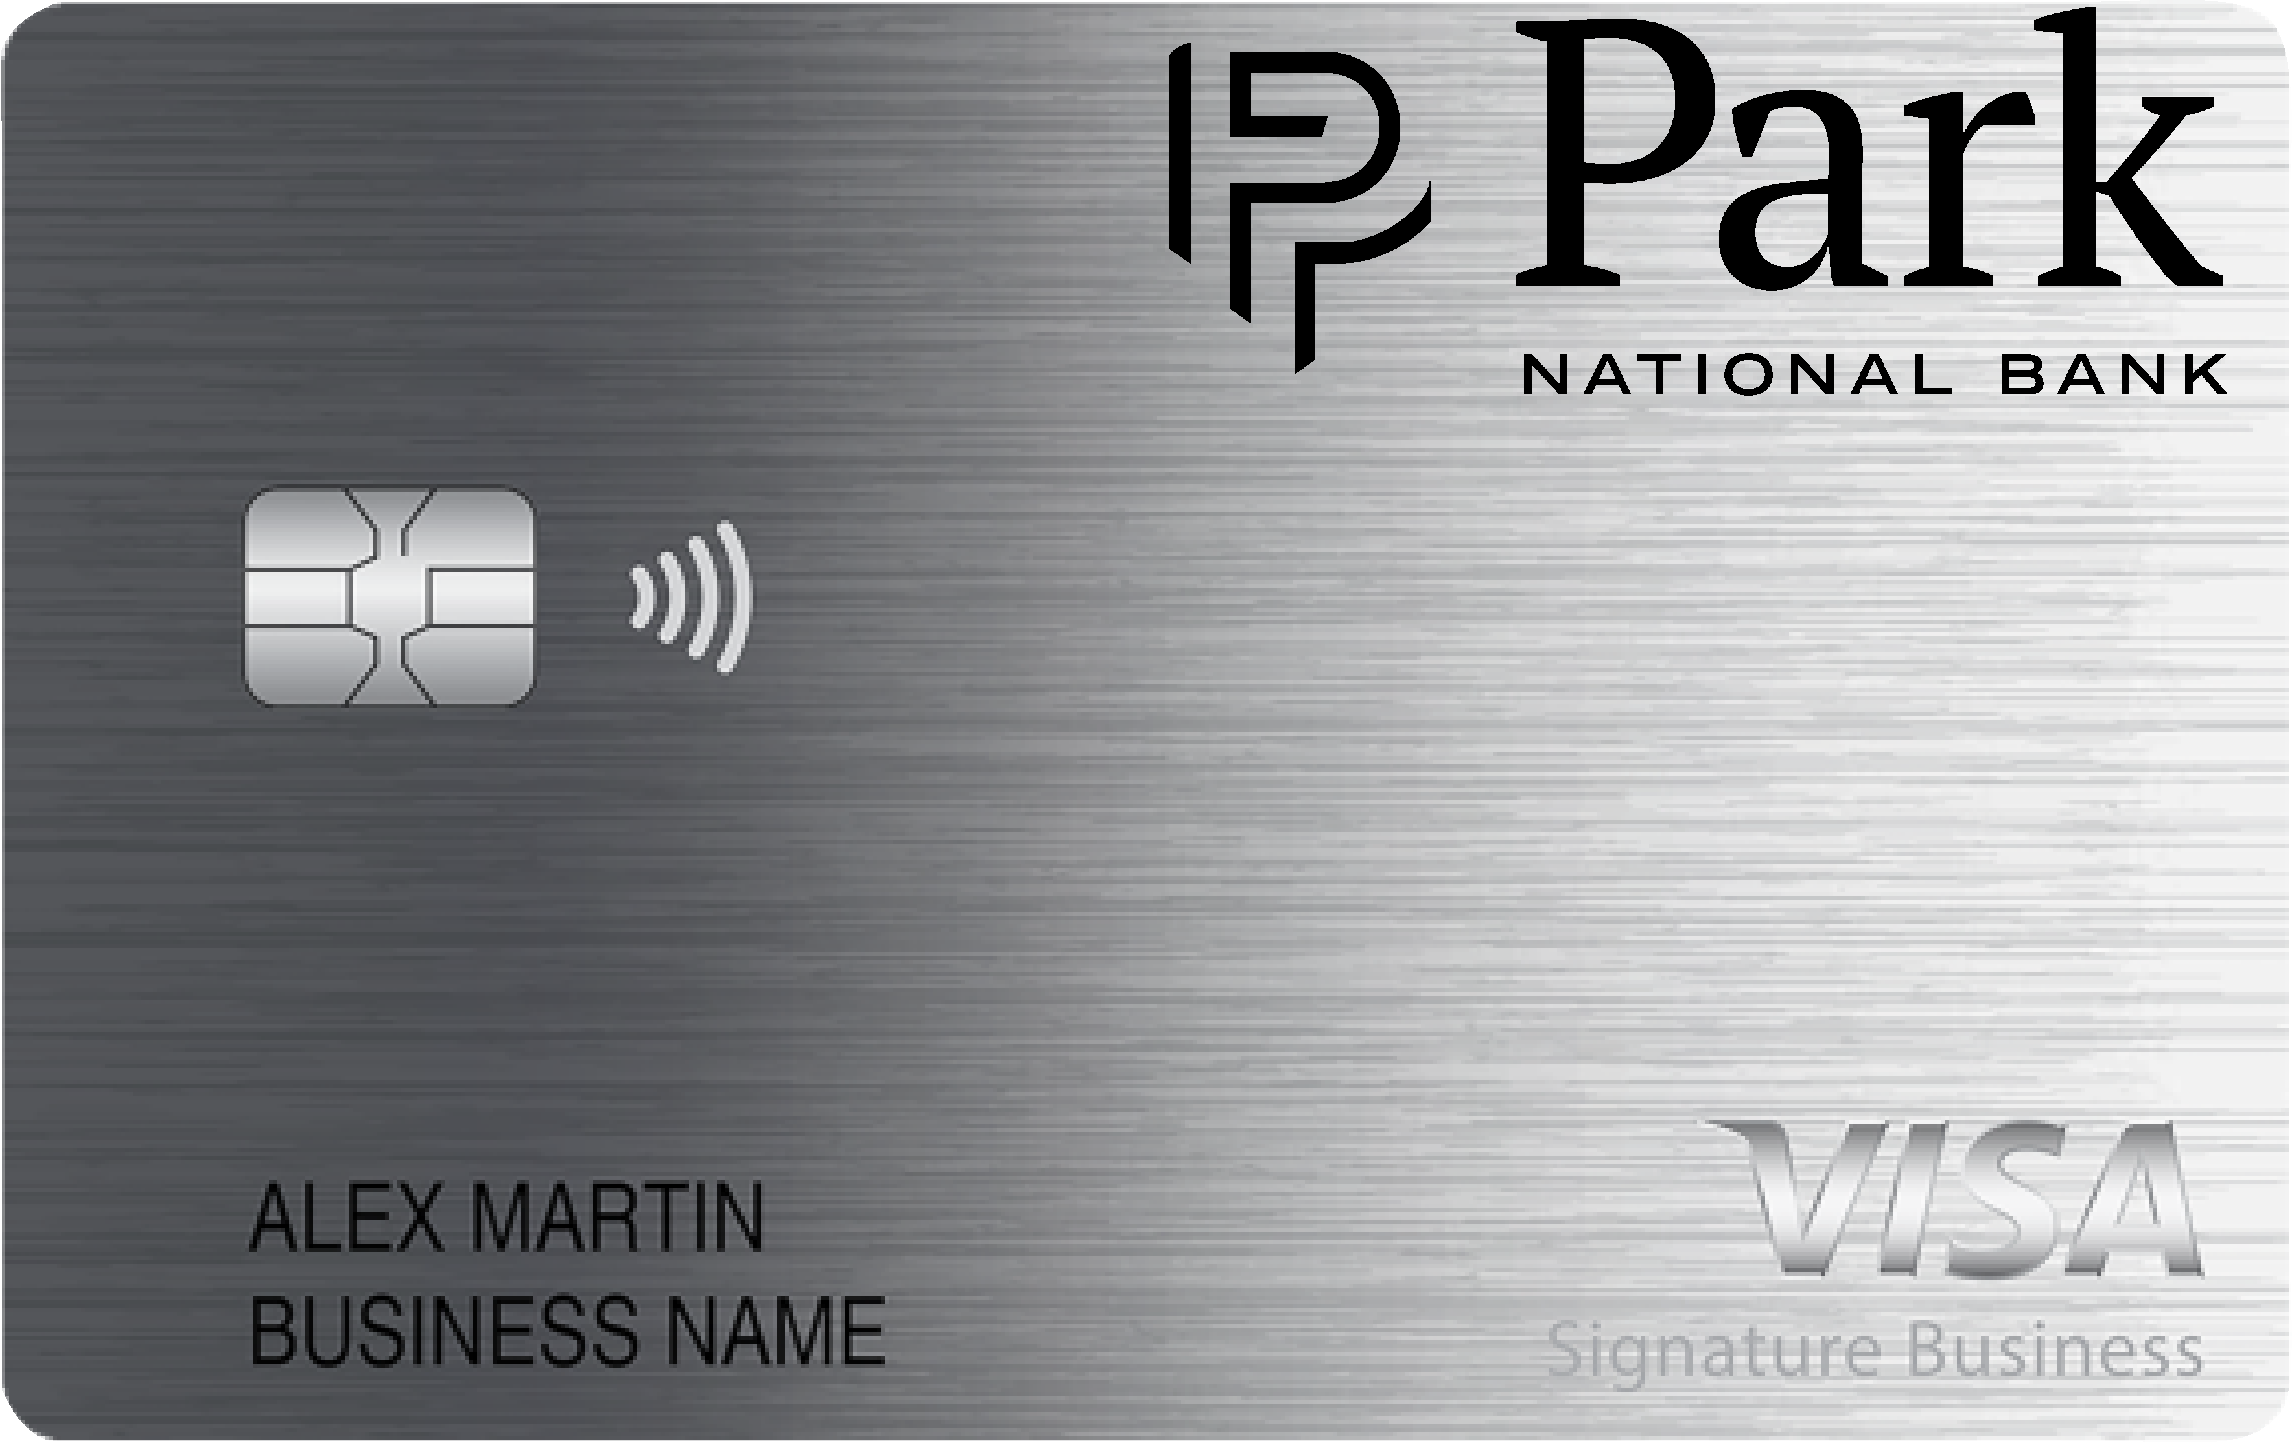 Park National Bank Smart Business Rewards Card